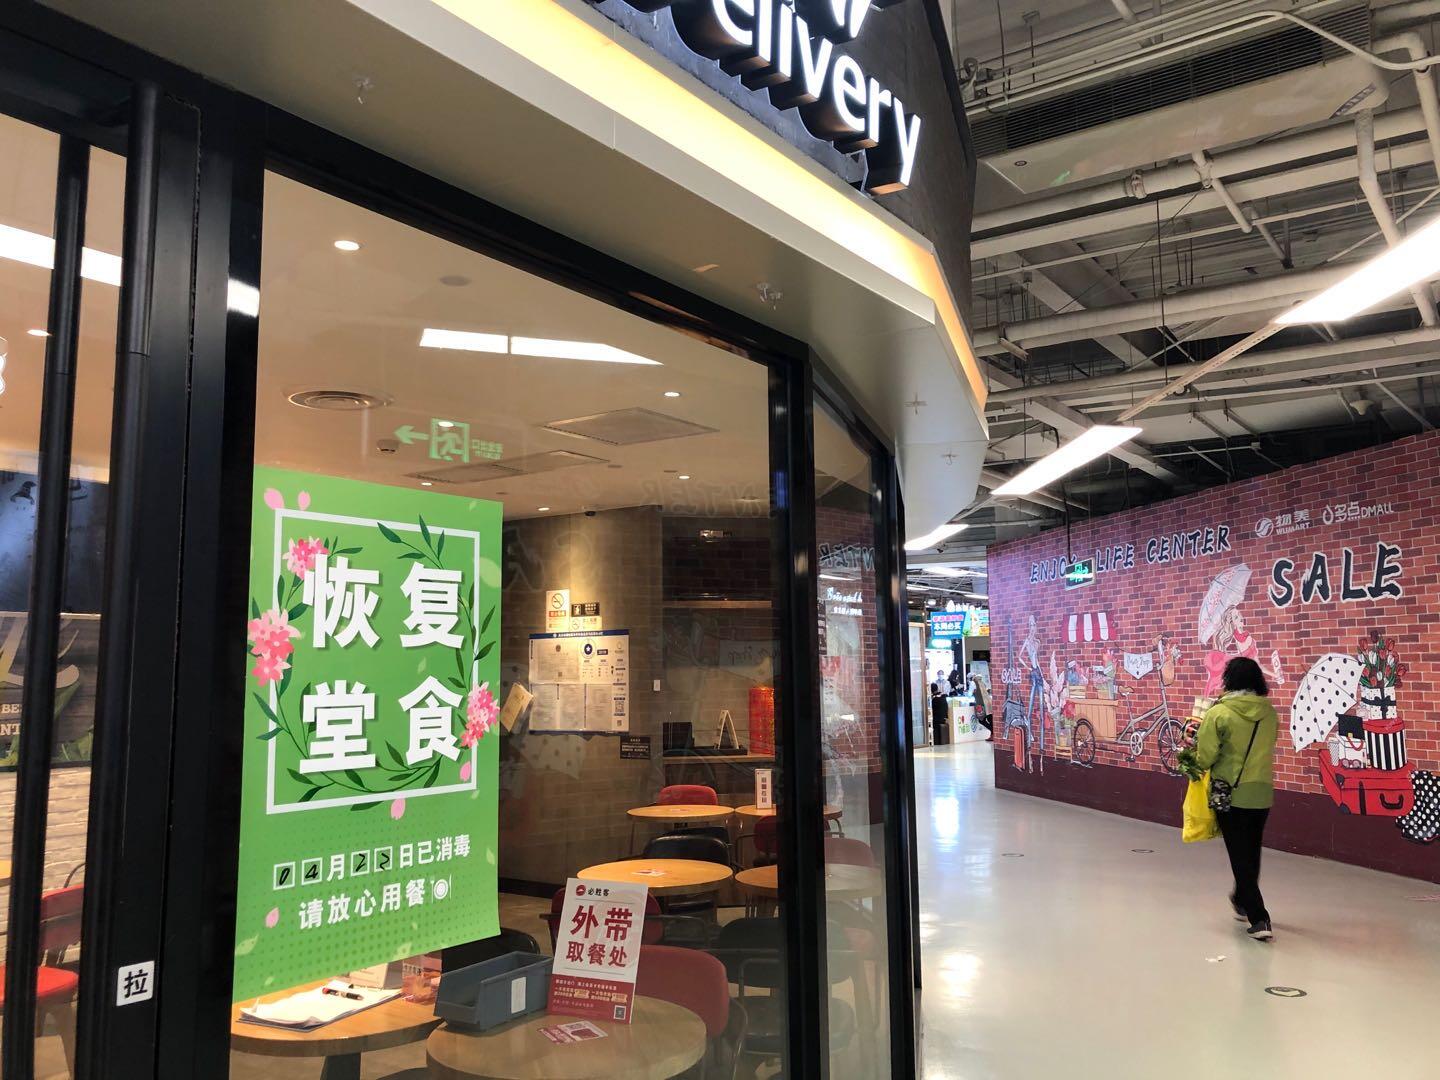 北京市中関村のスーパー内にあるレストラン。中での食事も可能にはなったが、まだ食事する人は少なく、料理の持ち帰りが多い（2020年4月22日、筆者撮影）